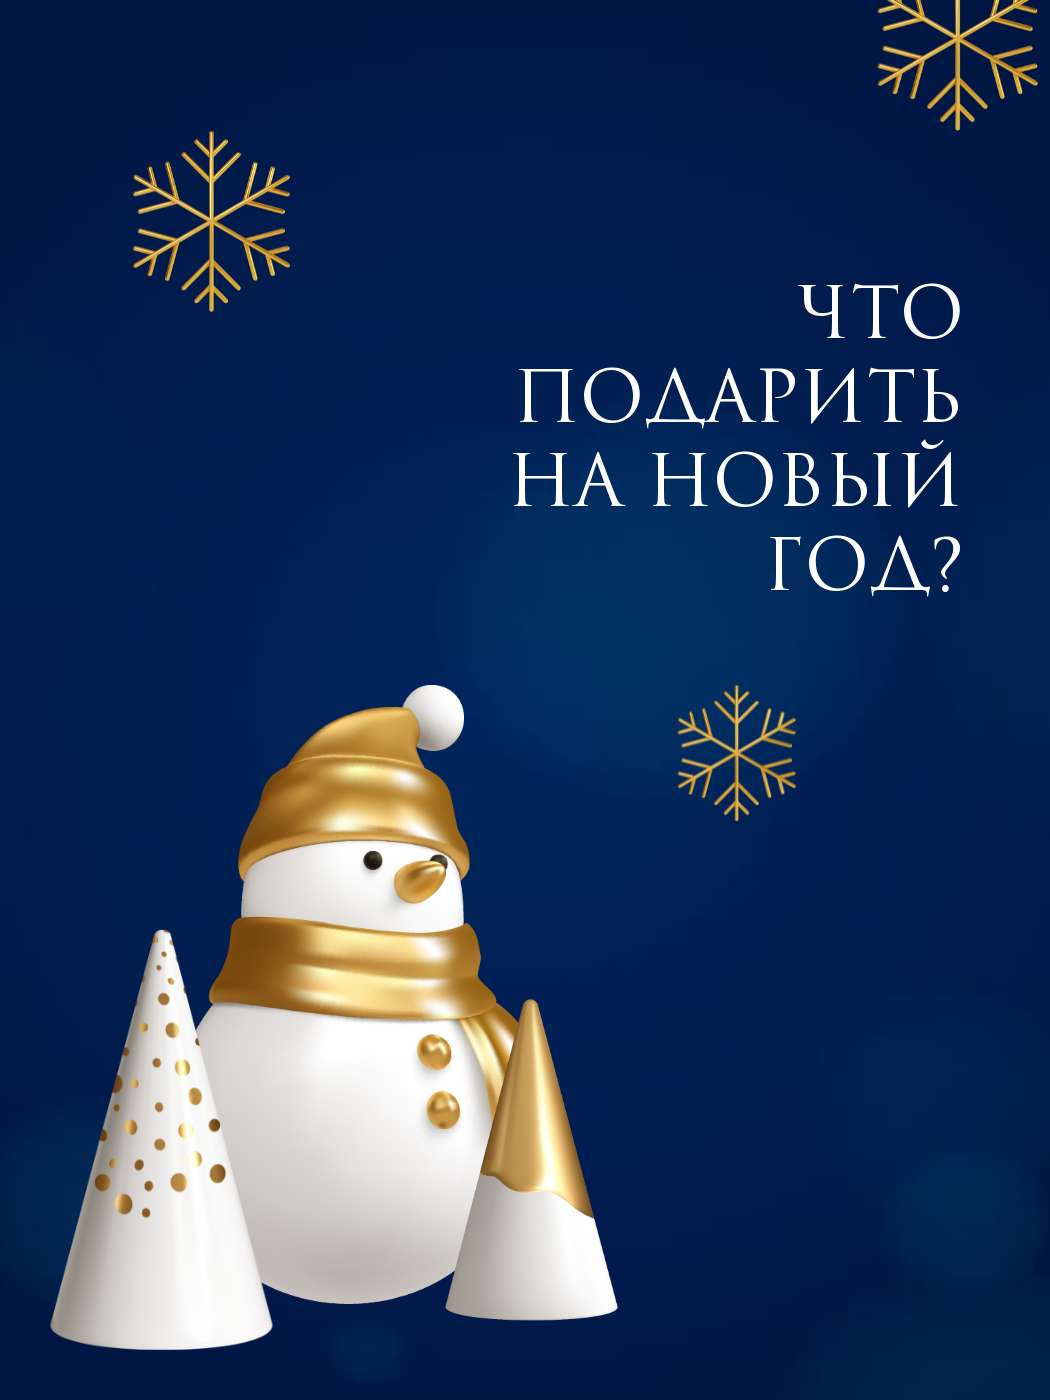 Контрастная темно-синяя новогодняя открытка со снеговиком и елочками с золотыми украшениями и снежинками